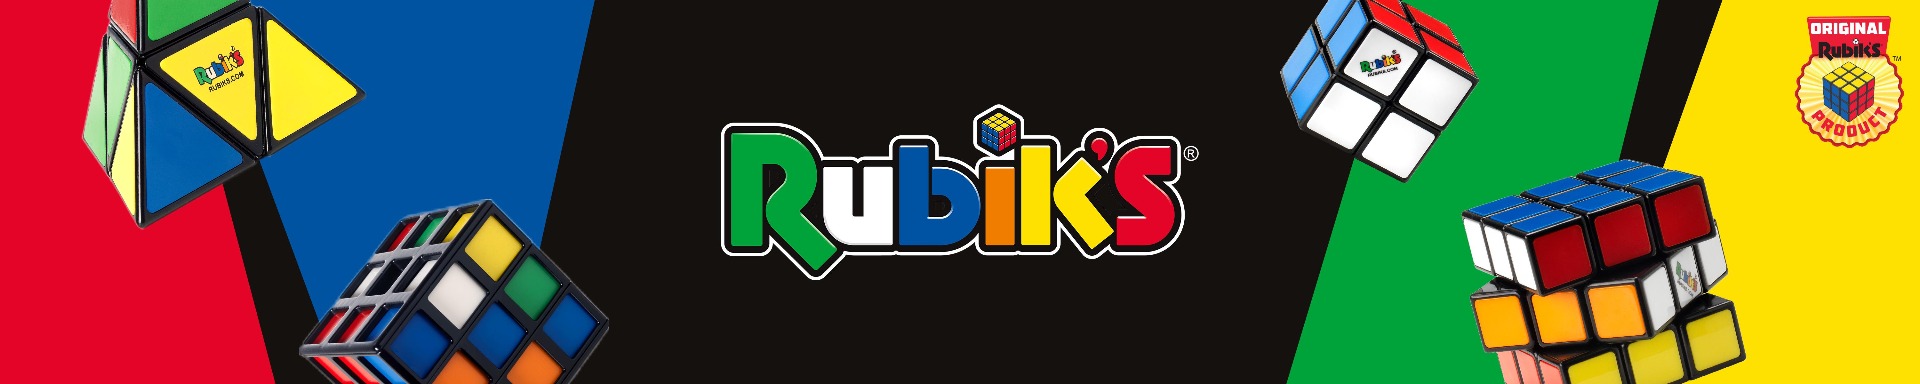 S22_Apr_Rubiks_6000x1200